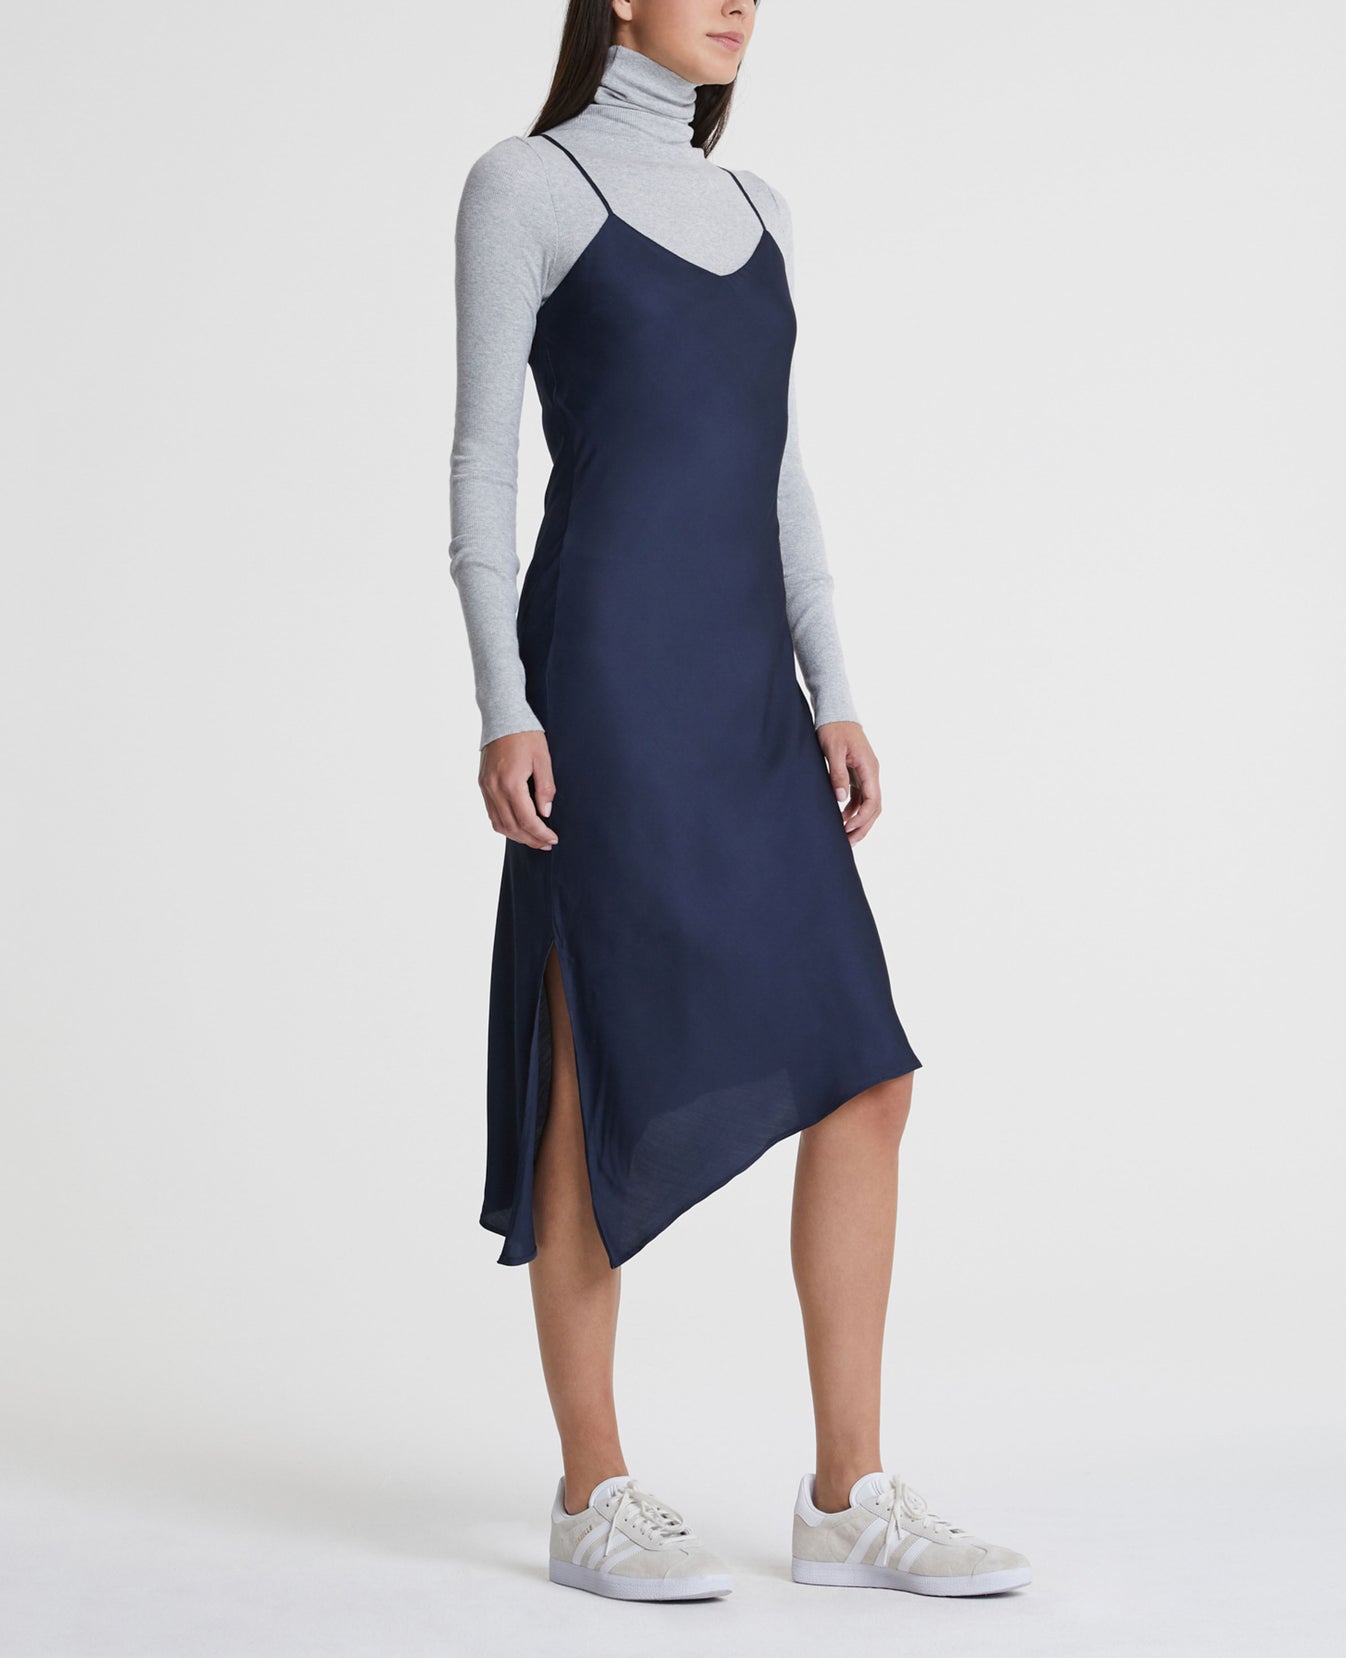 Scarlett Dress Blue Vault Classic Slip Dress Women Onepiece Photo 2